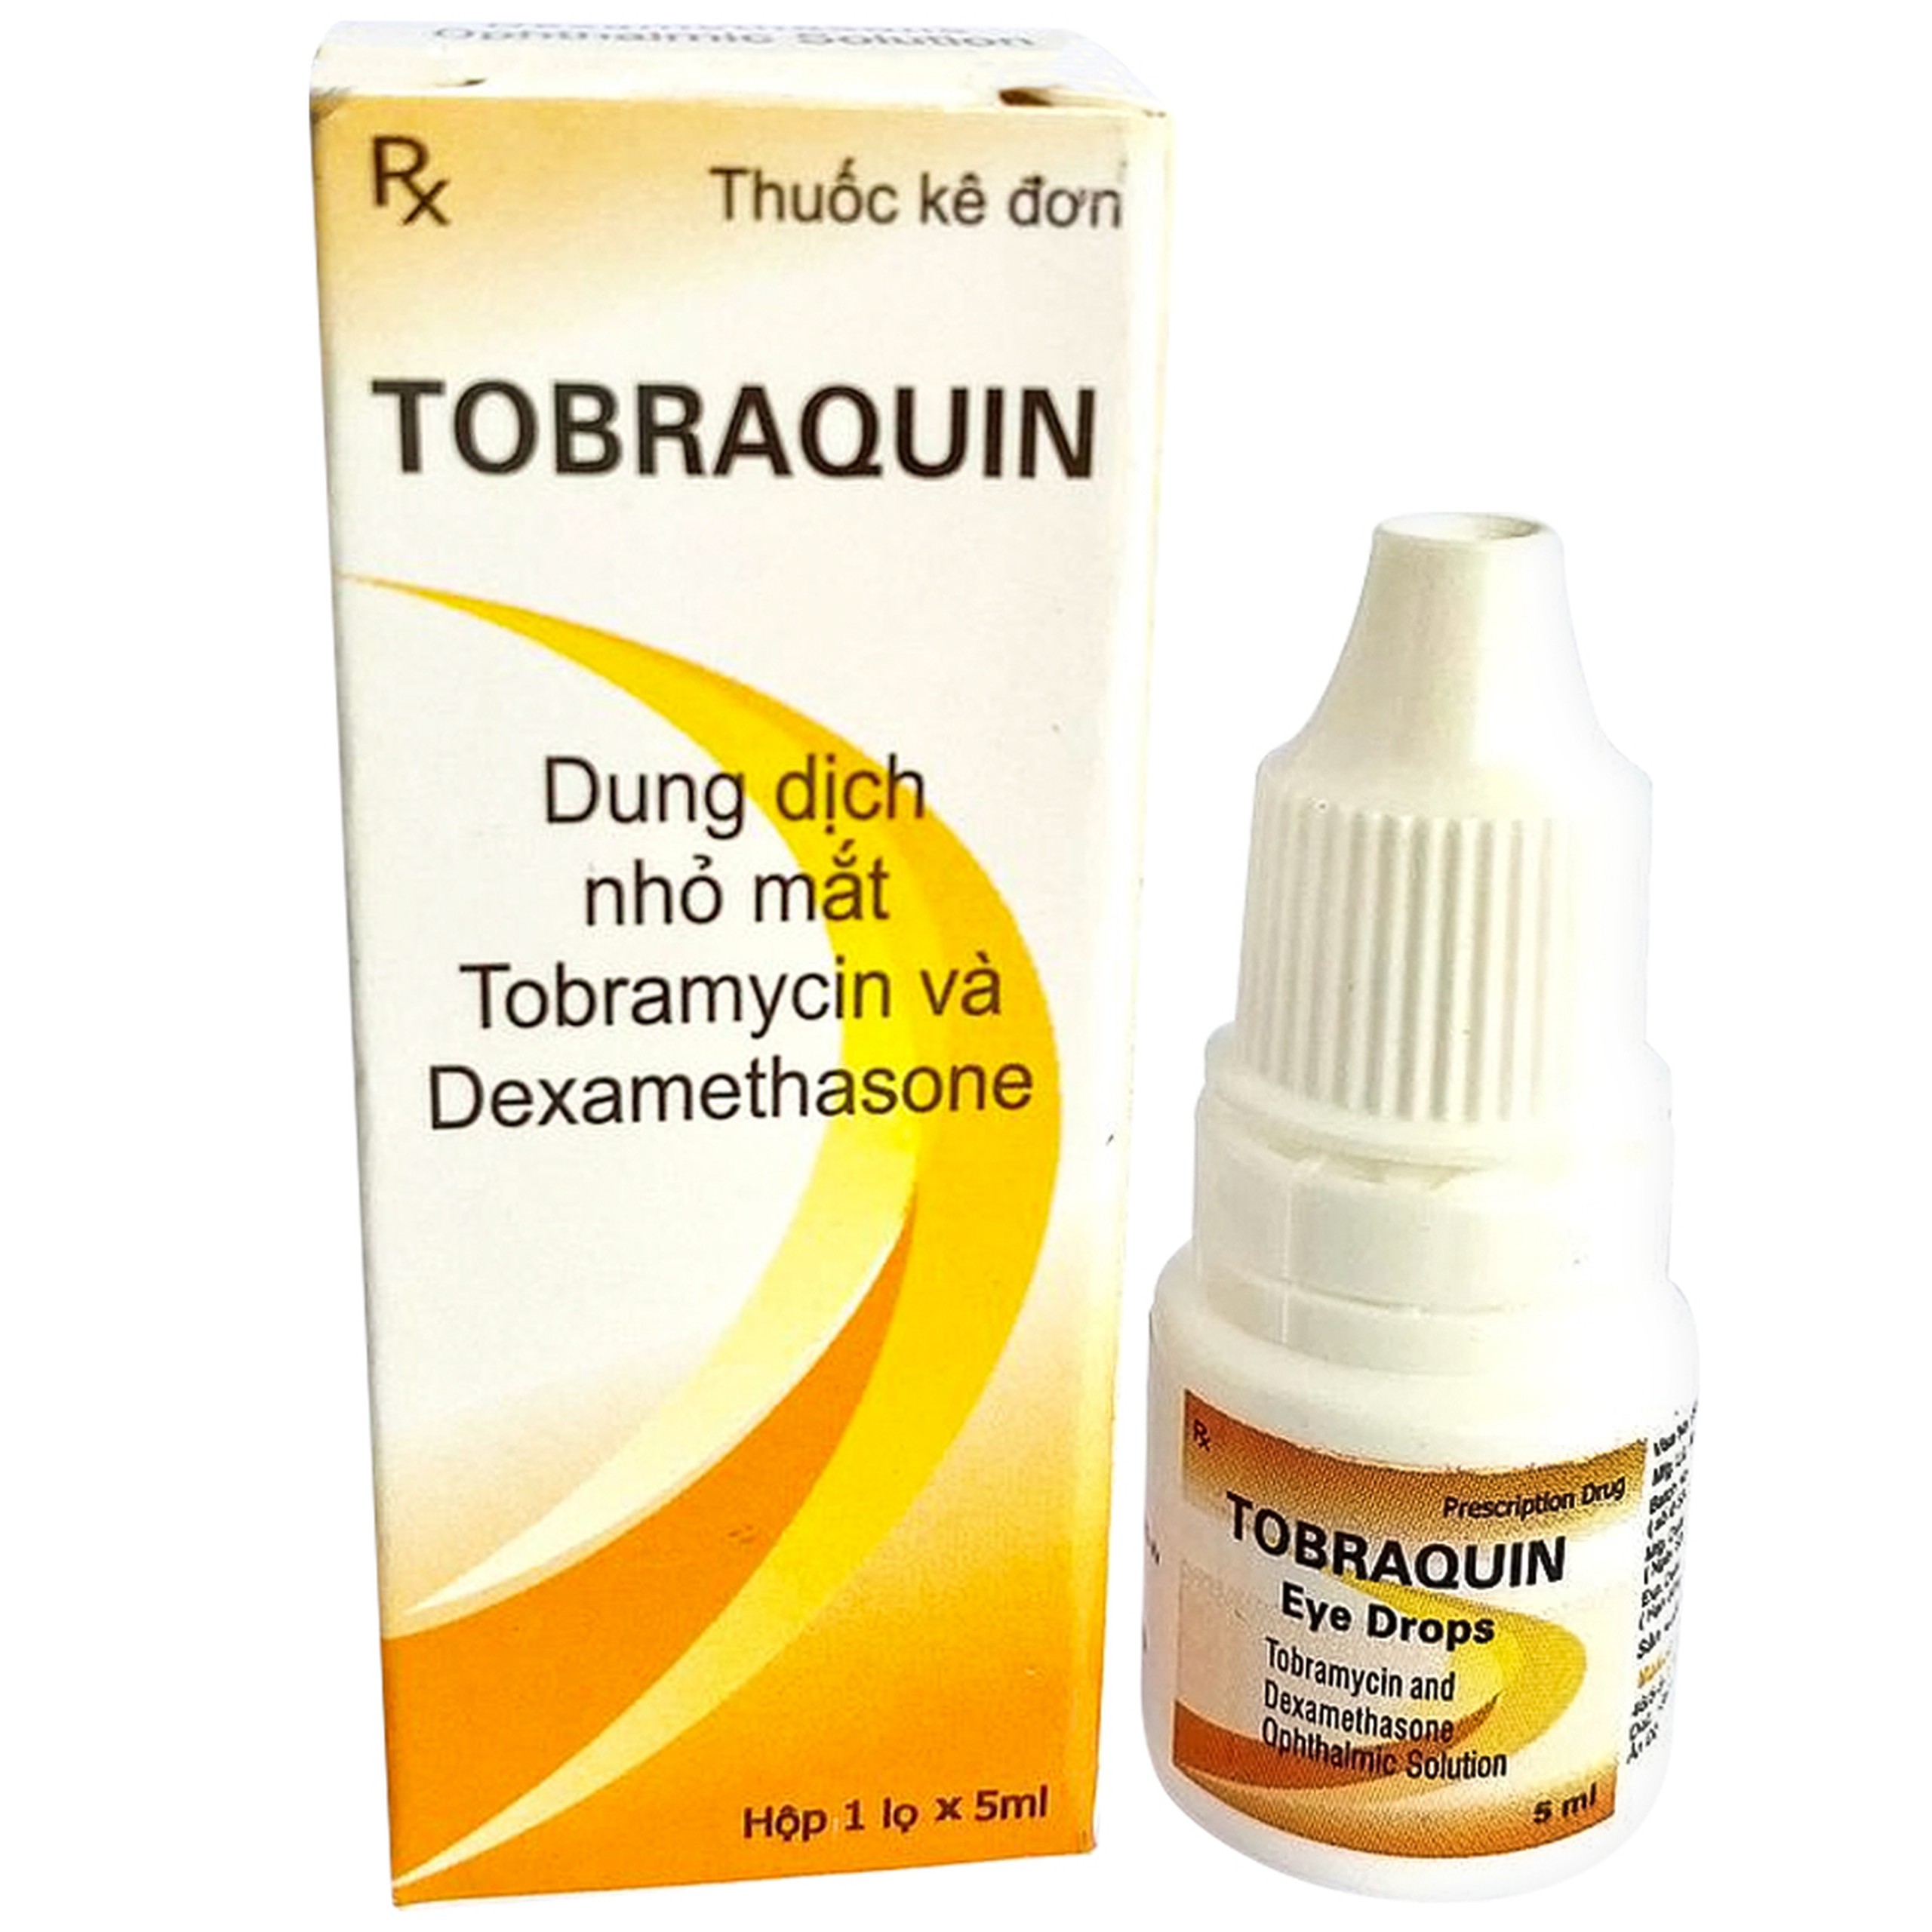 Thuốc nhỏ mắt Tobraquin Makcur điều trị viêm mắt, nhiễm khuẩn mắt (5ml)